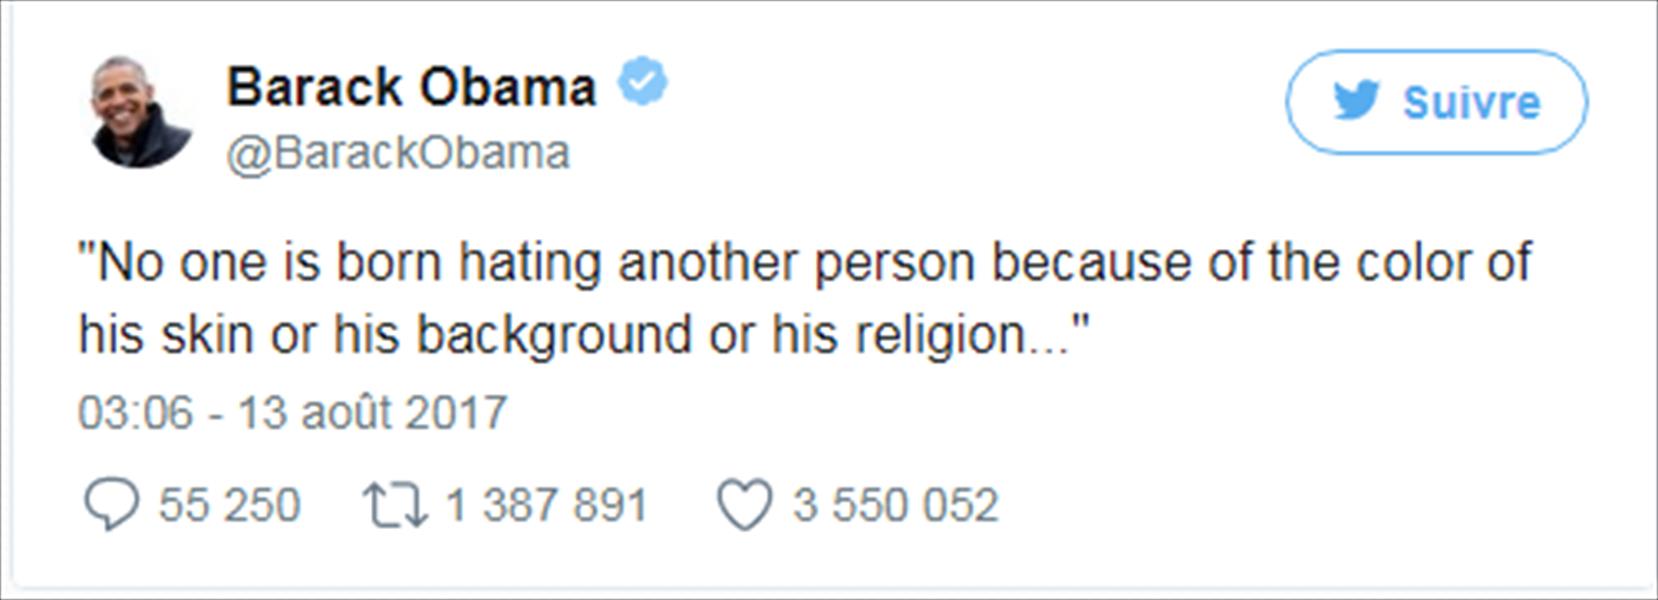 أوباما يتربع على عرش «تويتر» بحصول تغريدته على أكبر عدد من الإعجابات فى تاريخ الموقع